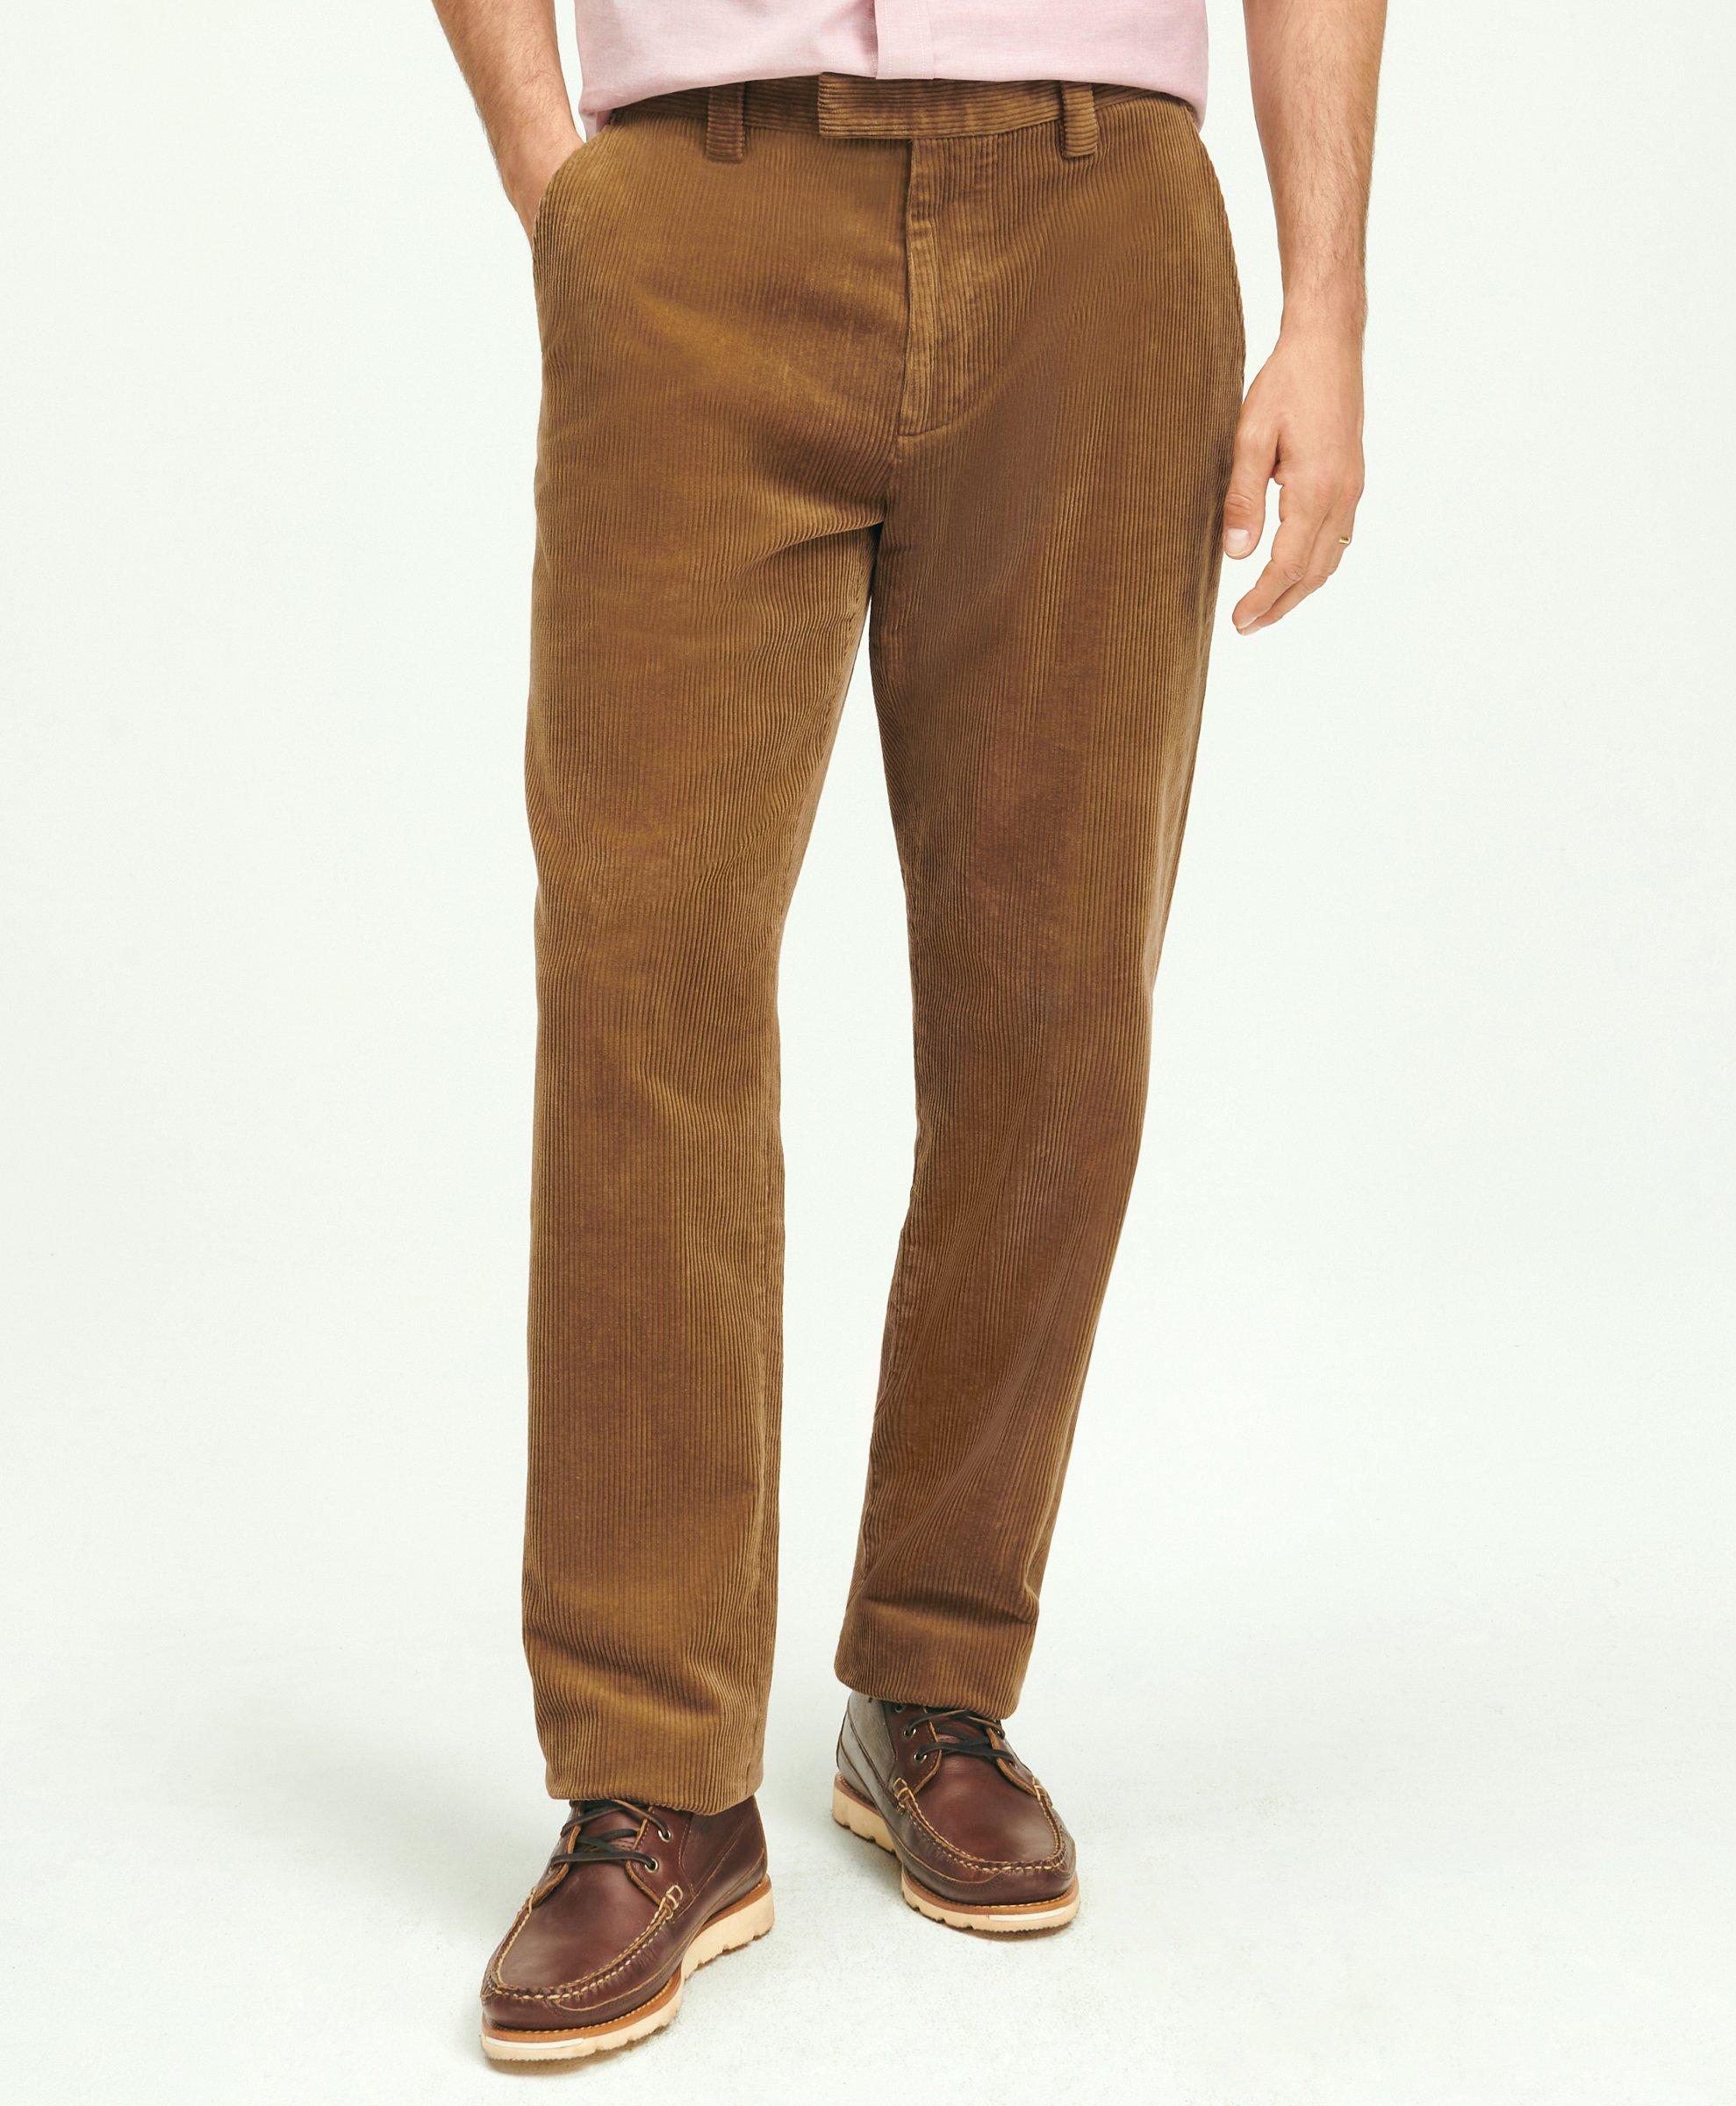 Fashion (Brown)Women's Plush Thick Casual Pants Corduroy Warm